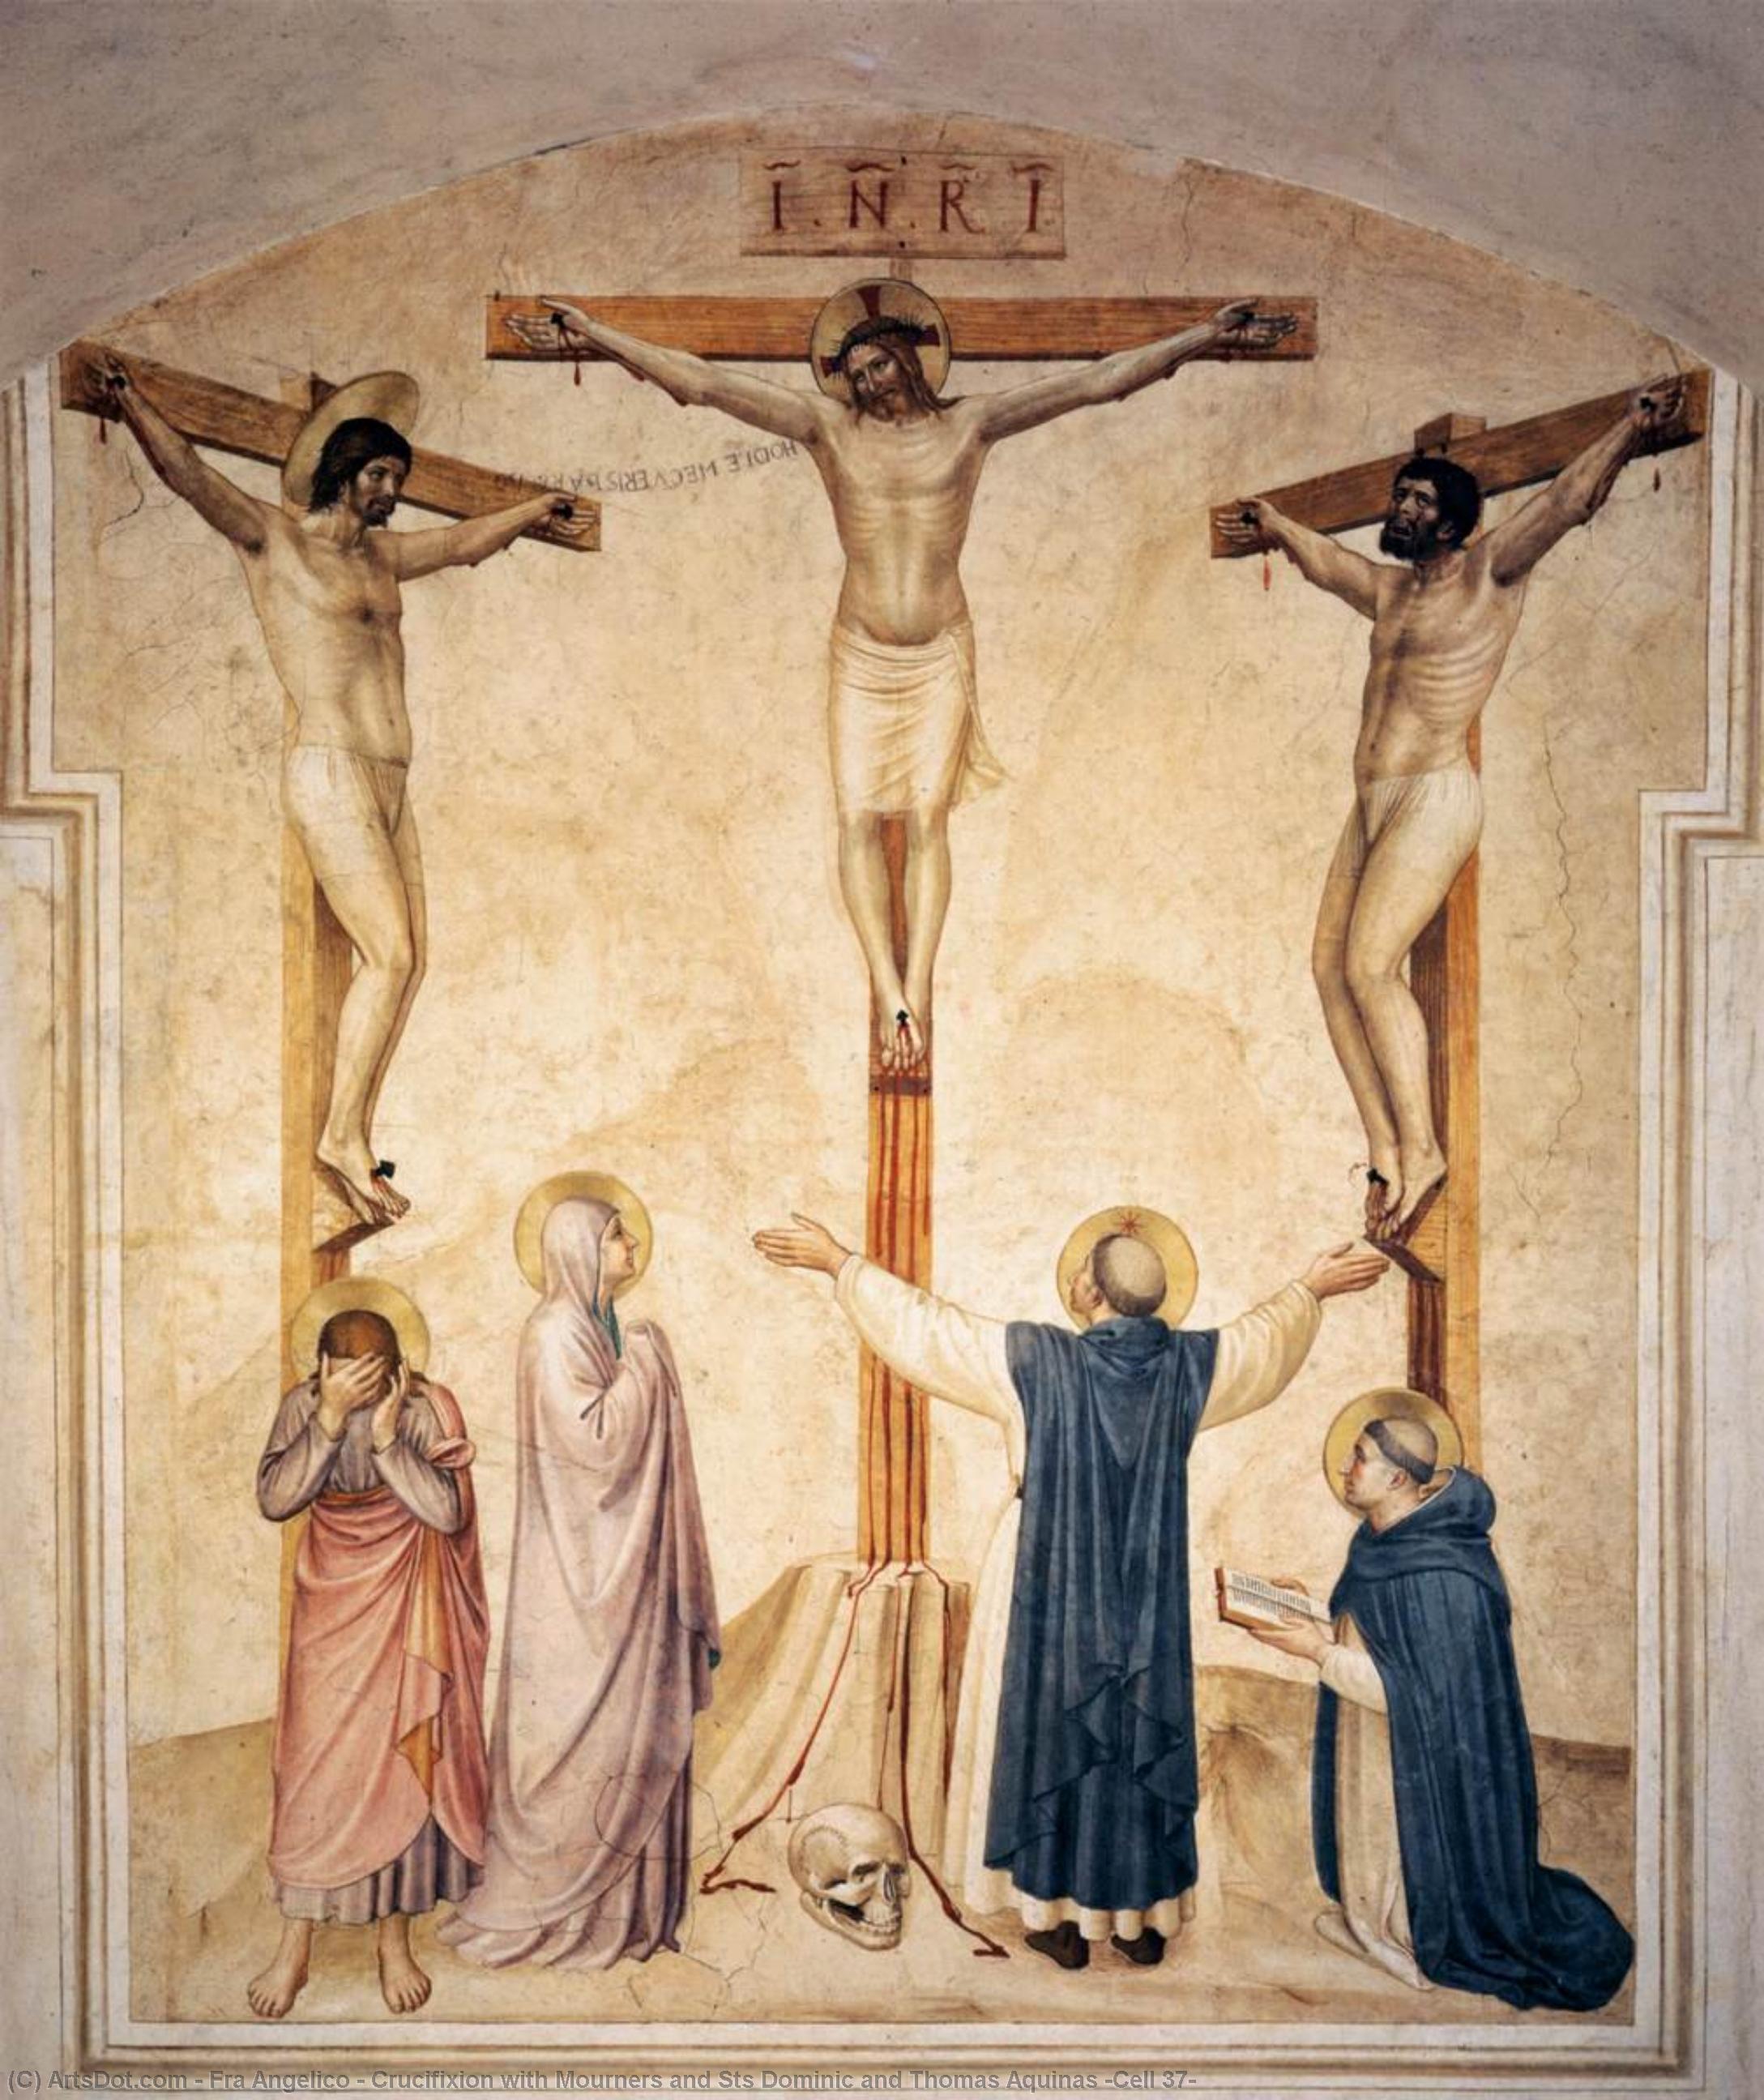 WikiOO.org - Enciklopedija likovnih umjetnosti - Slikarstvo, umjetnička djela Fra Angelico - Crucifixion with Mourners and Sts Dominic and Thomas Aquinas (Cell 37)